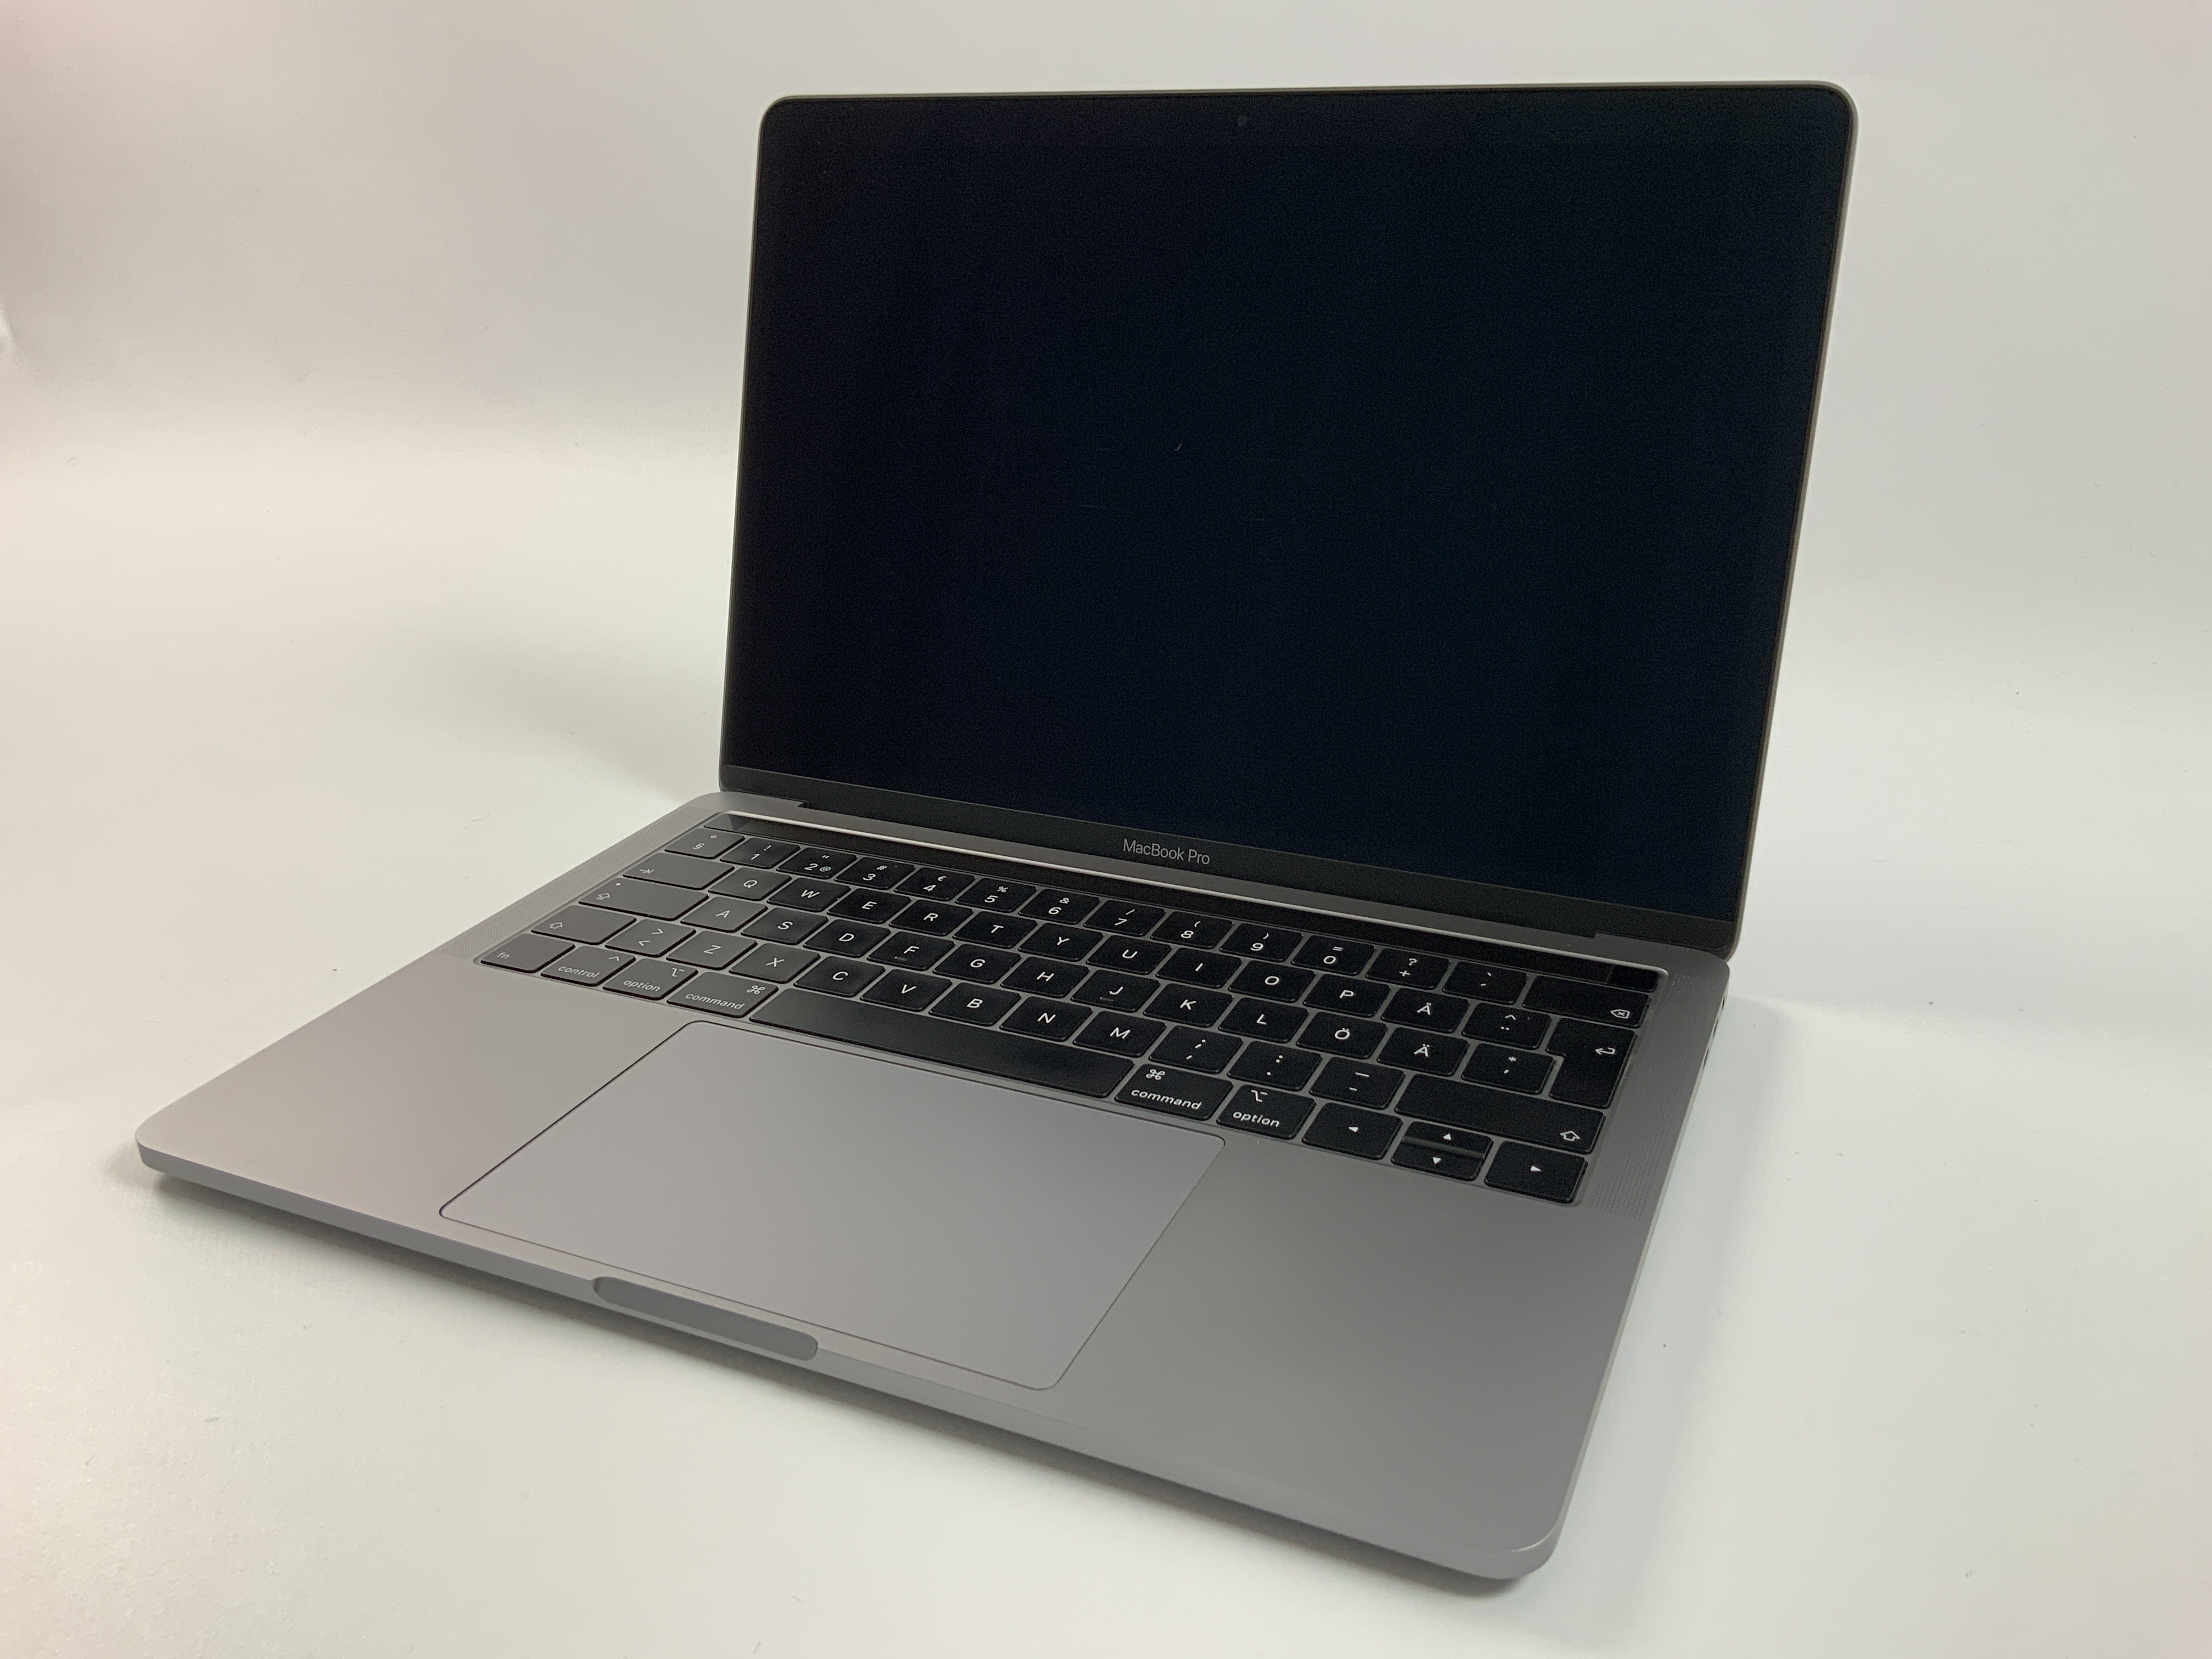 MacBook Pro 13" 4TBT Mid 2019 (Intel Quad-Core i7 2.8 GHz 16 GB RAM 256 GB SSD), Space Gray, Intel Quad-Core i7 2.8 GHz, 16 GB RAM, 256 GB SSD, immagine 1